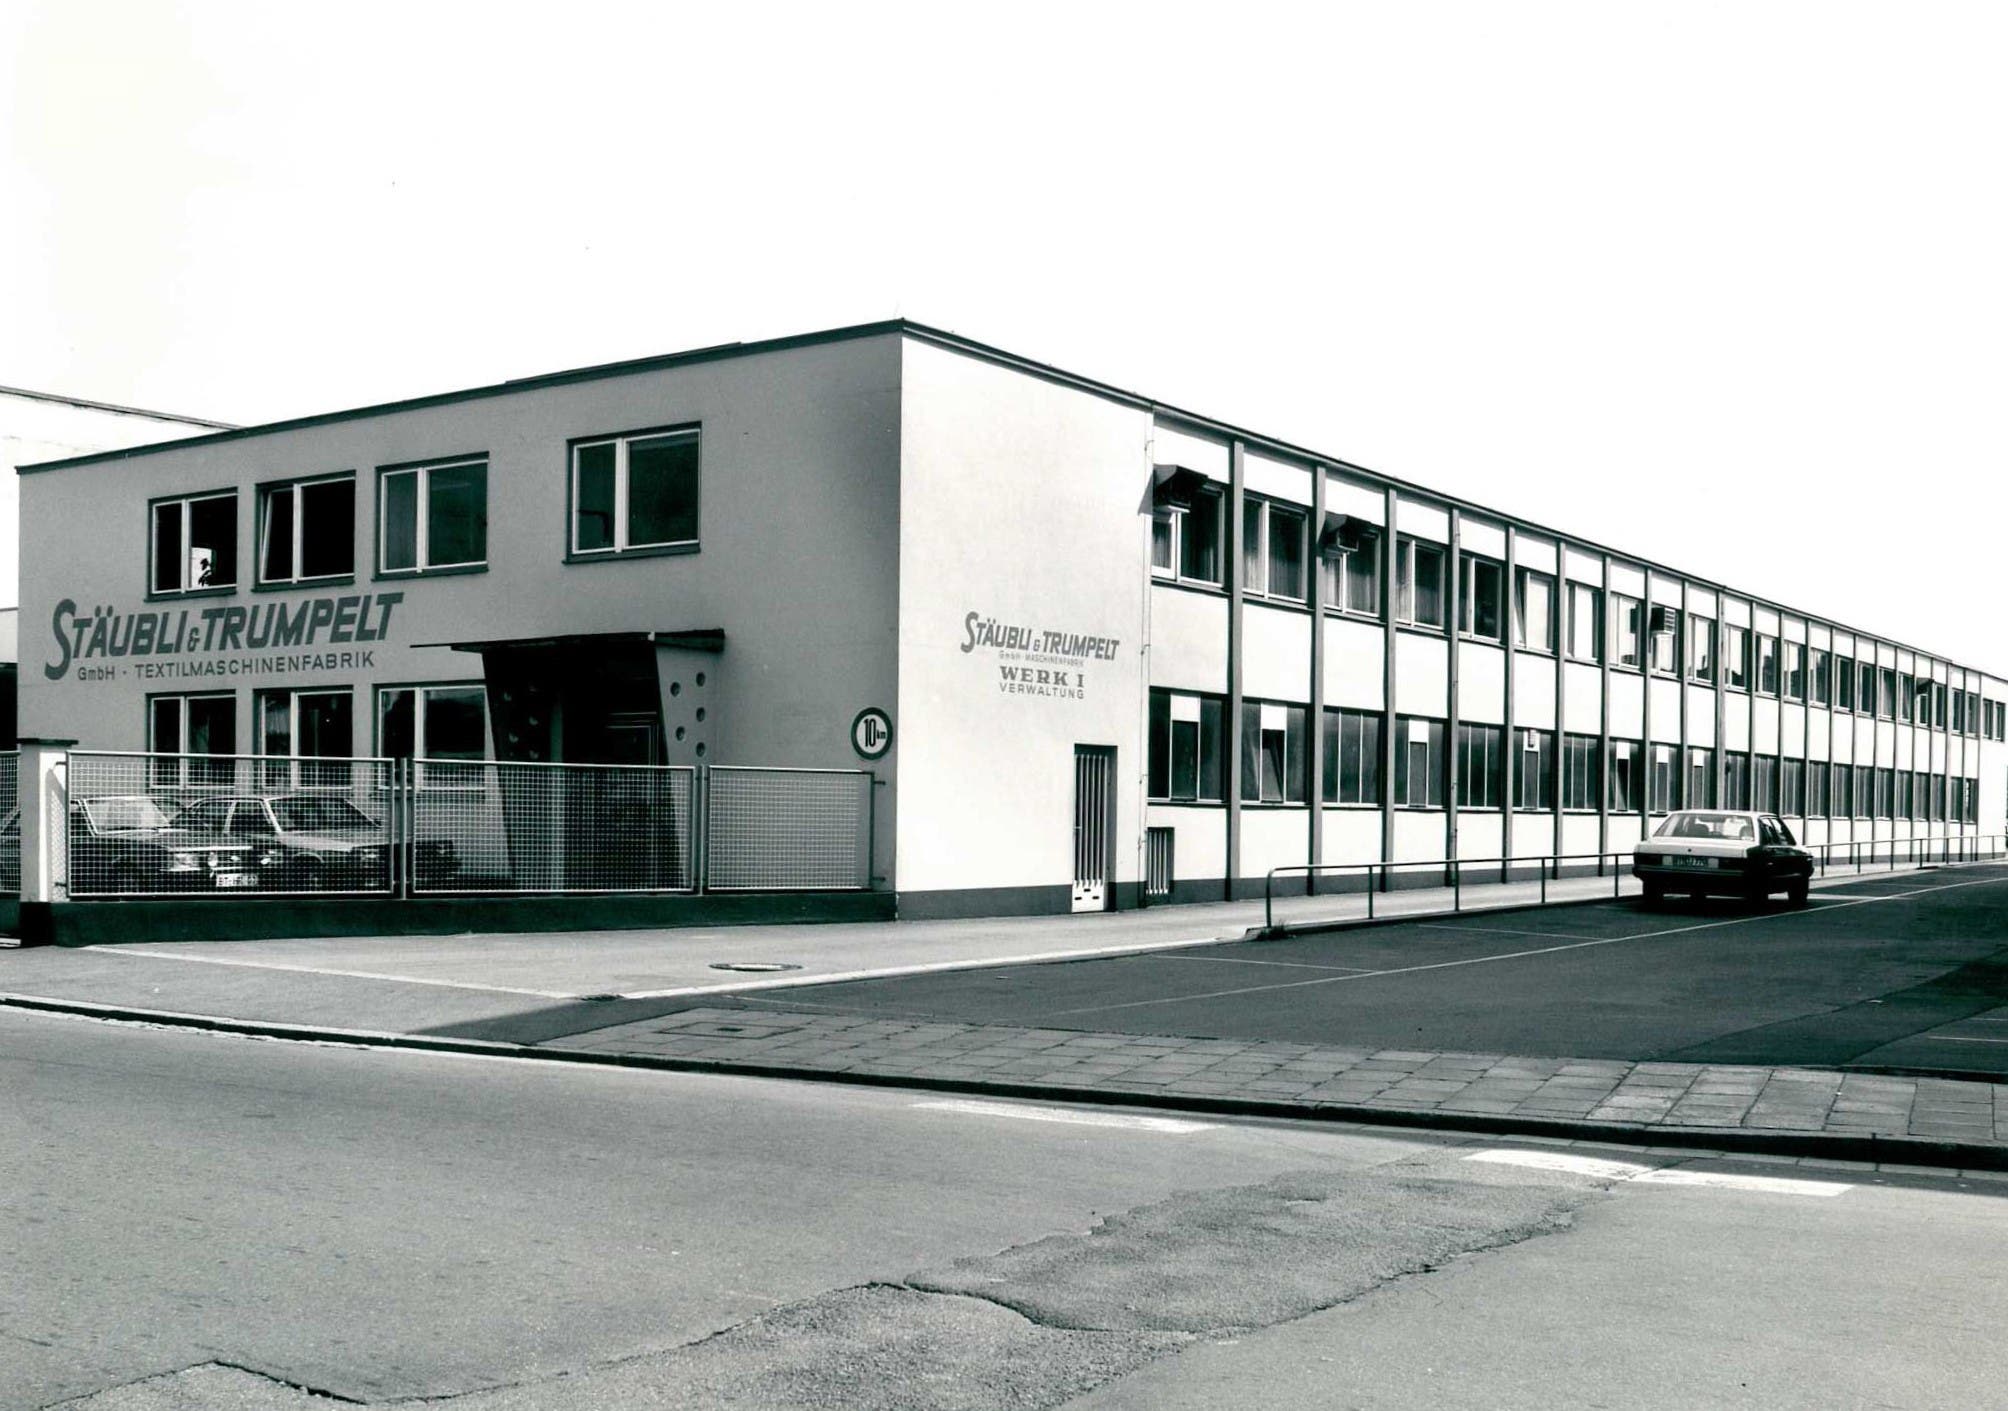 1969 - Dobby factory Stäubli & Trumpelt in Bayreuth / Germany